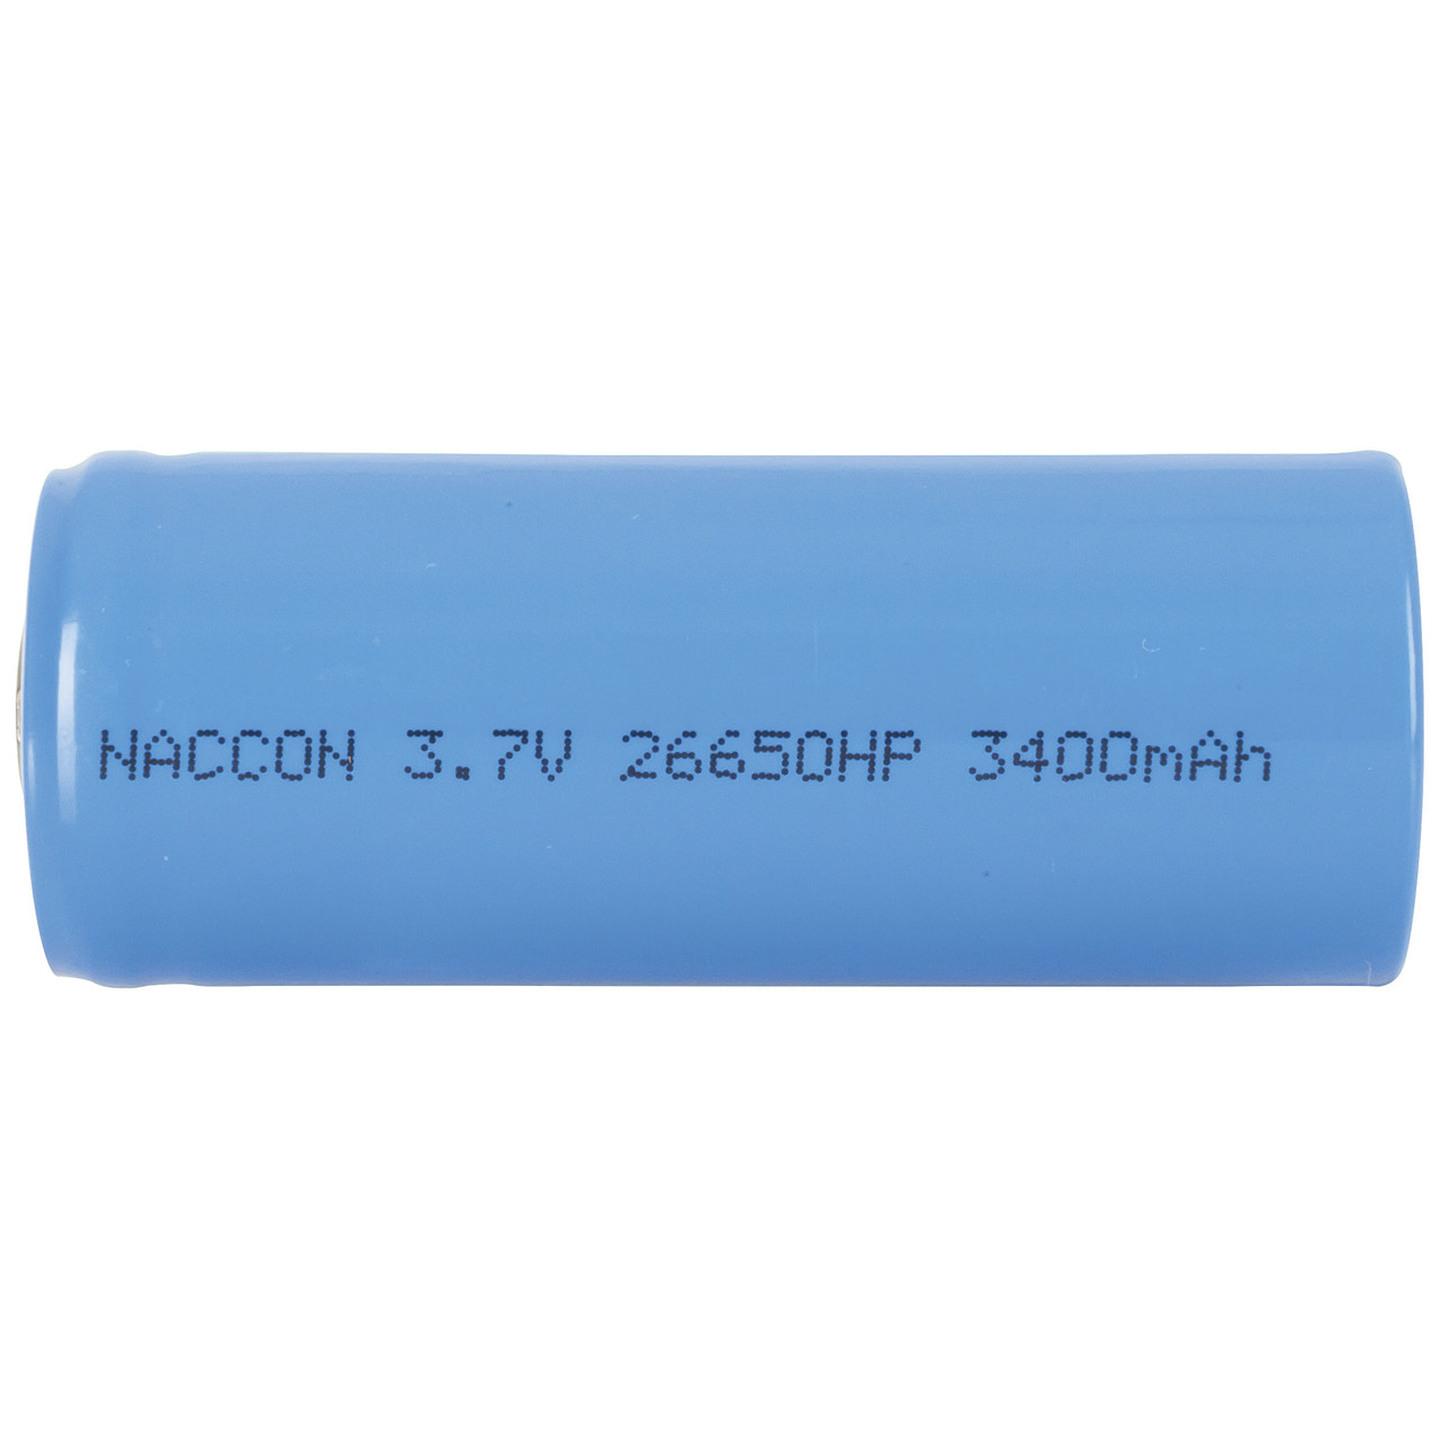 26650 Rechargeable Li-Ion Battery 3400mAh 3.7V Nipple